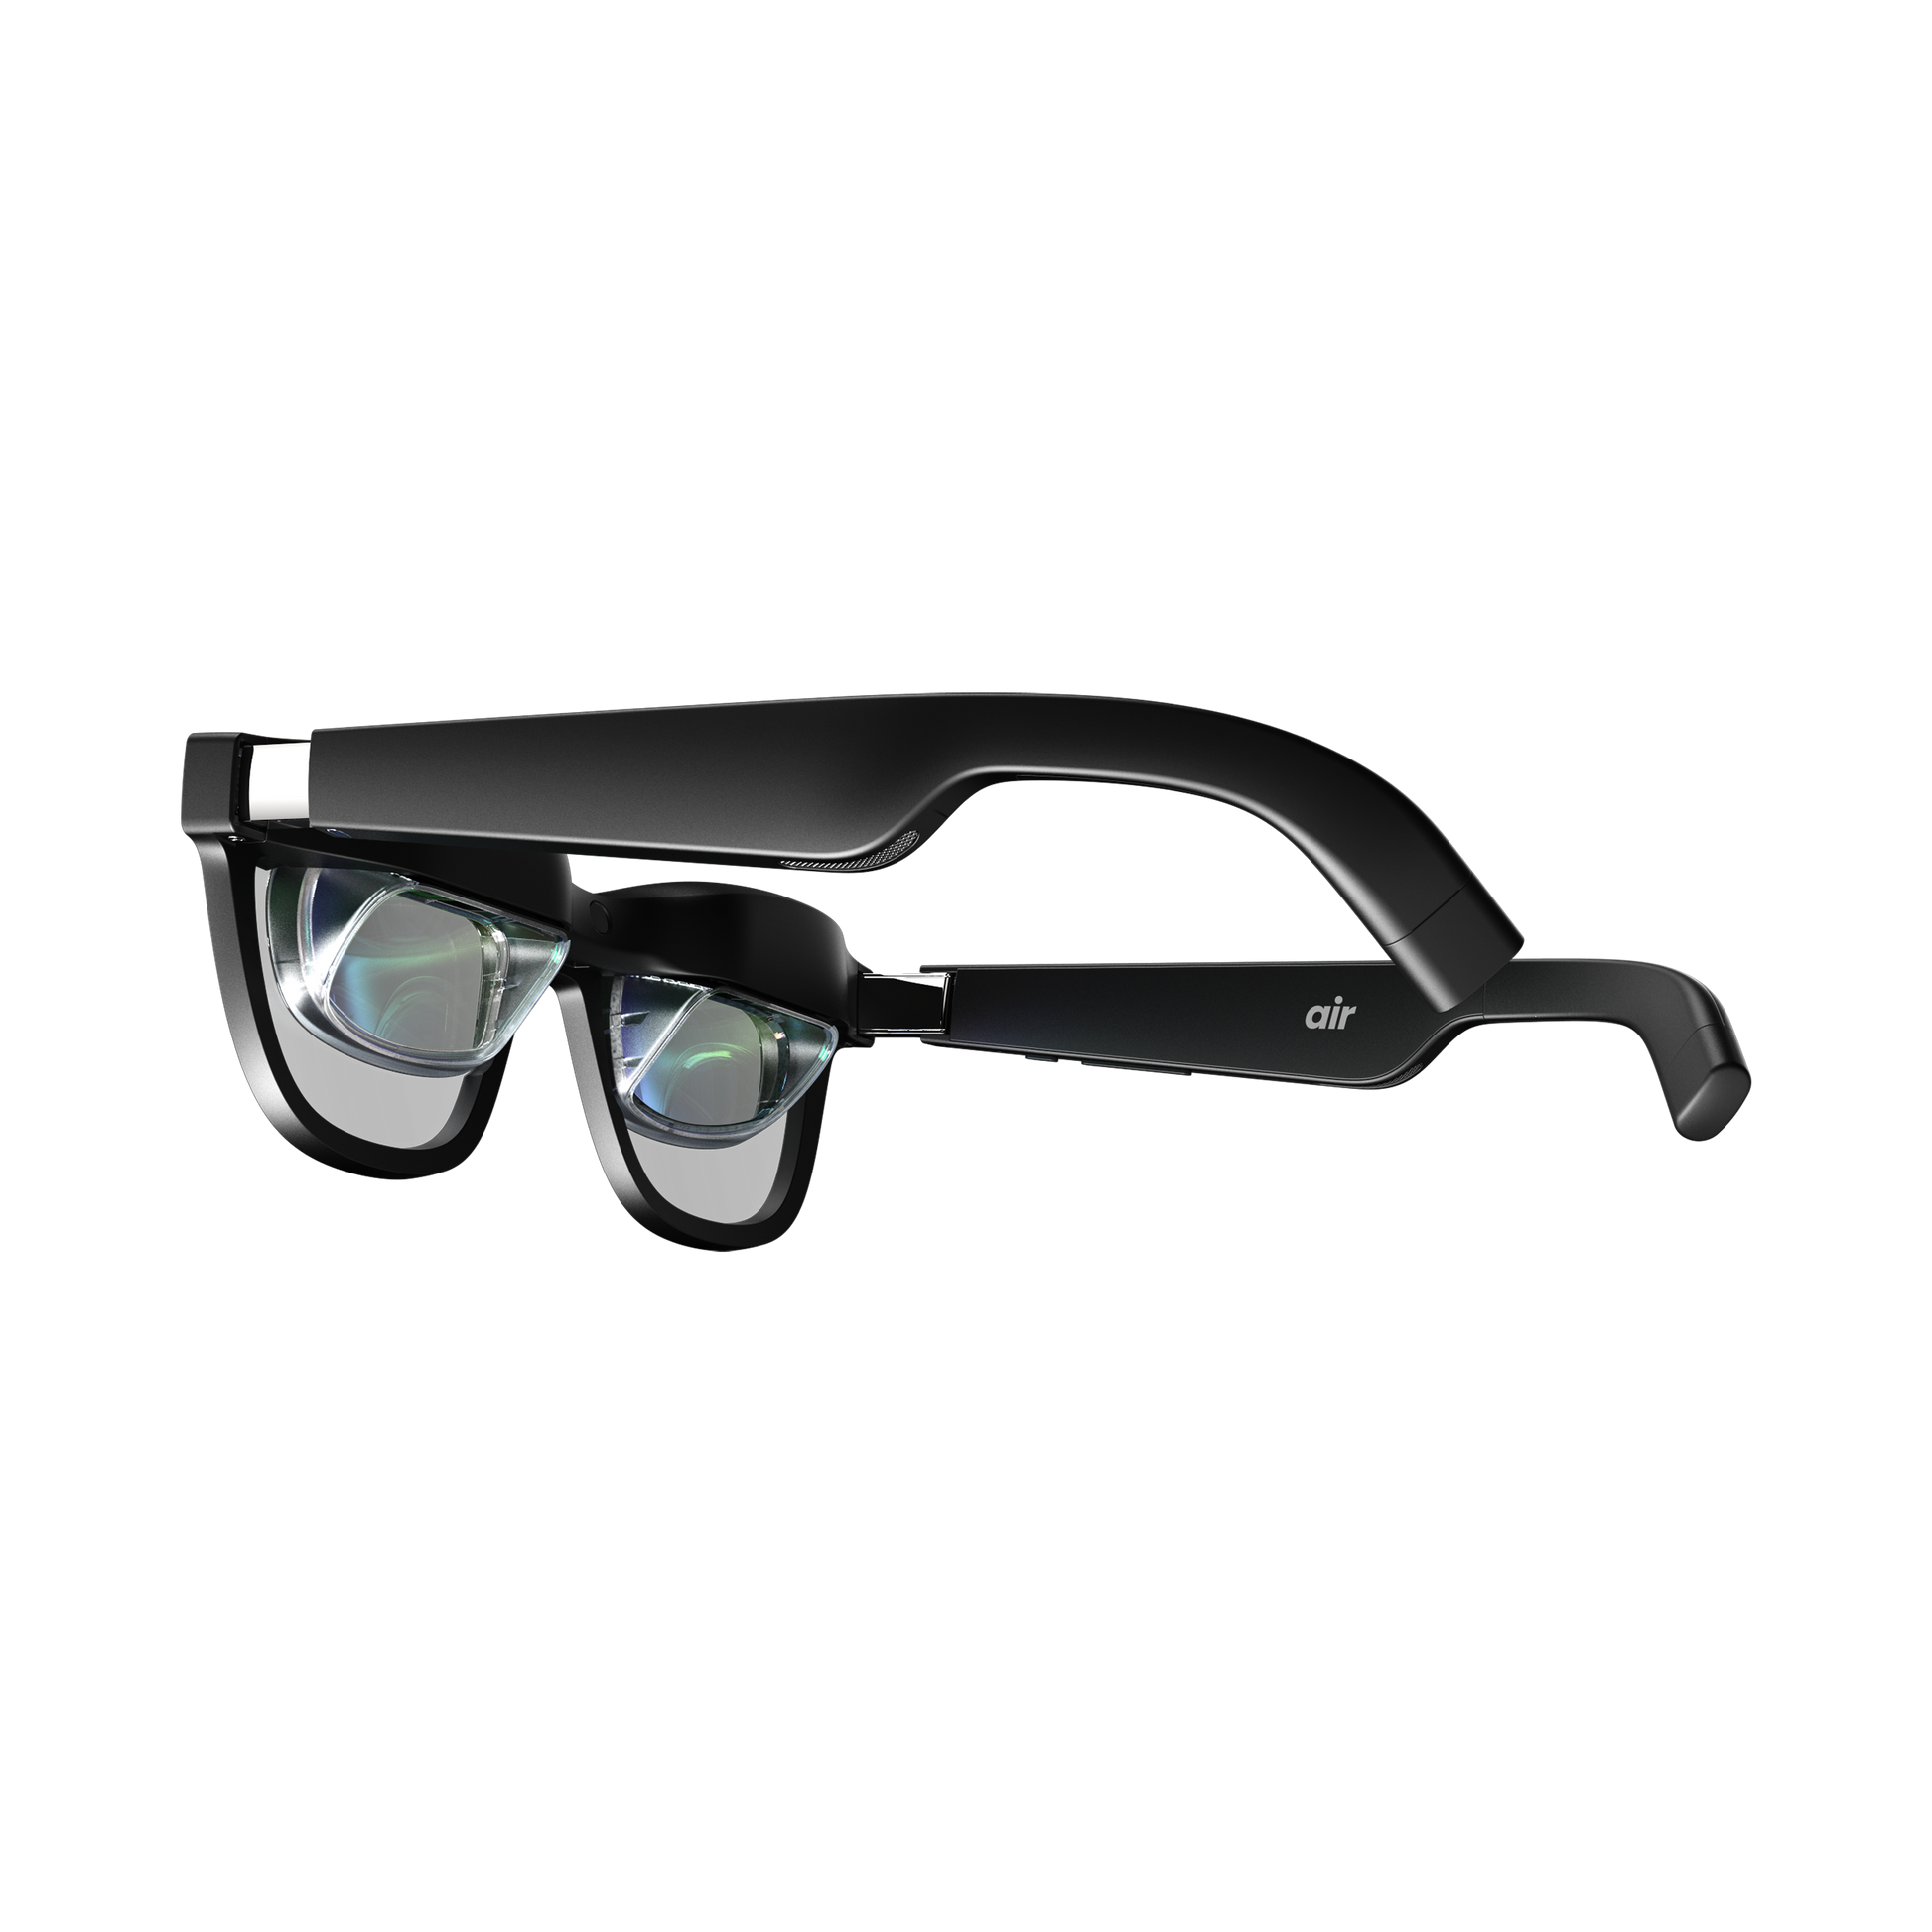 Lunettes XREAL Air AR, anciennement réelles, lunettes intelligentes avec  massive micro-OLED de 510,5 cm, lunettes de réalité augmentée, montre